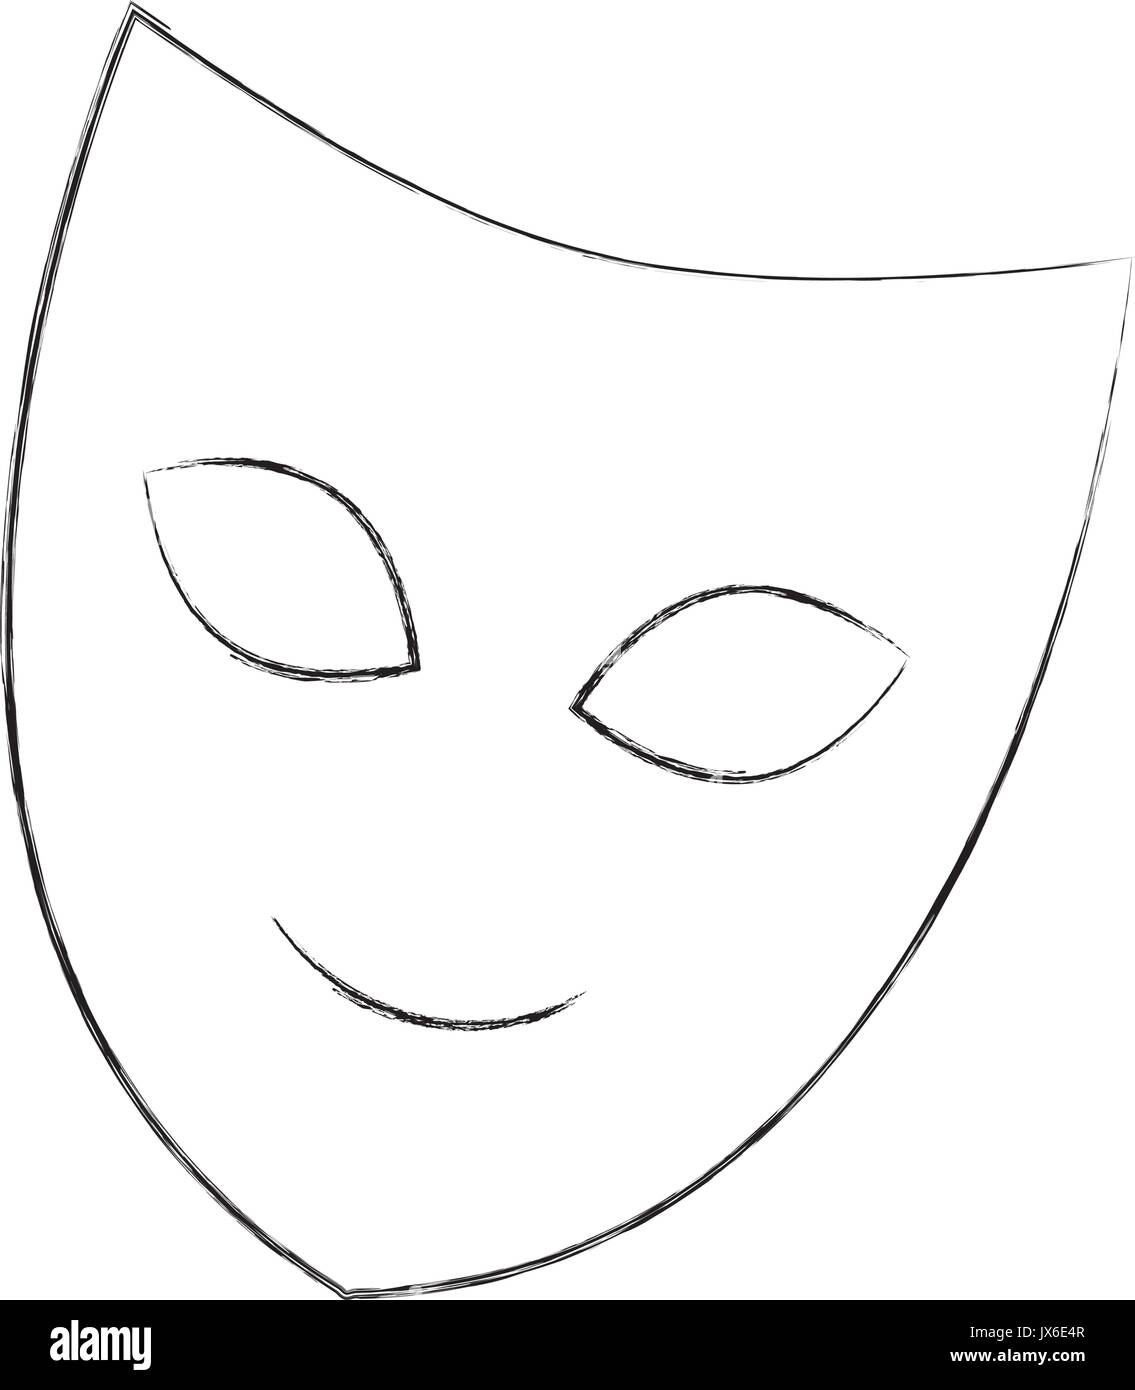 Самую простую маску. Театральная маска трафарет. Трафарет маски для лица. Трафареты театральных масок для лица. Театральная маска раскраска.